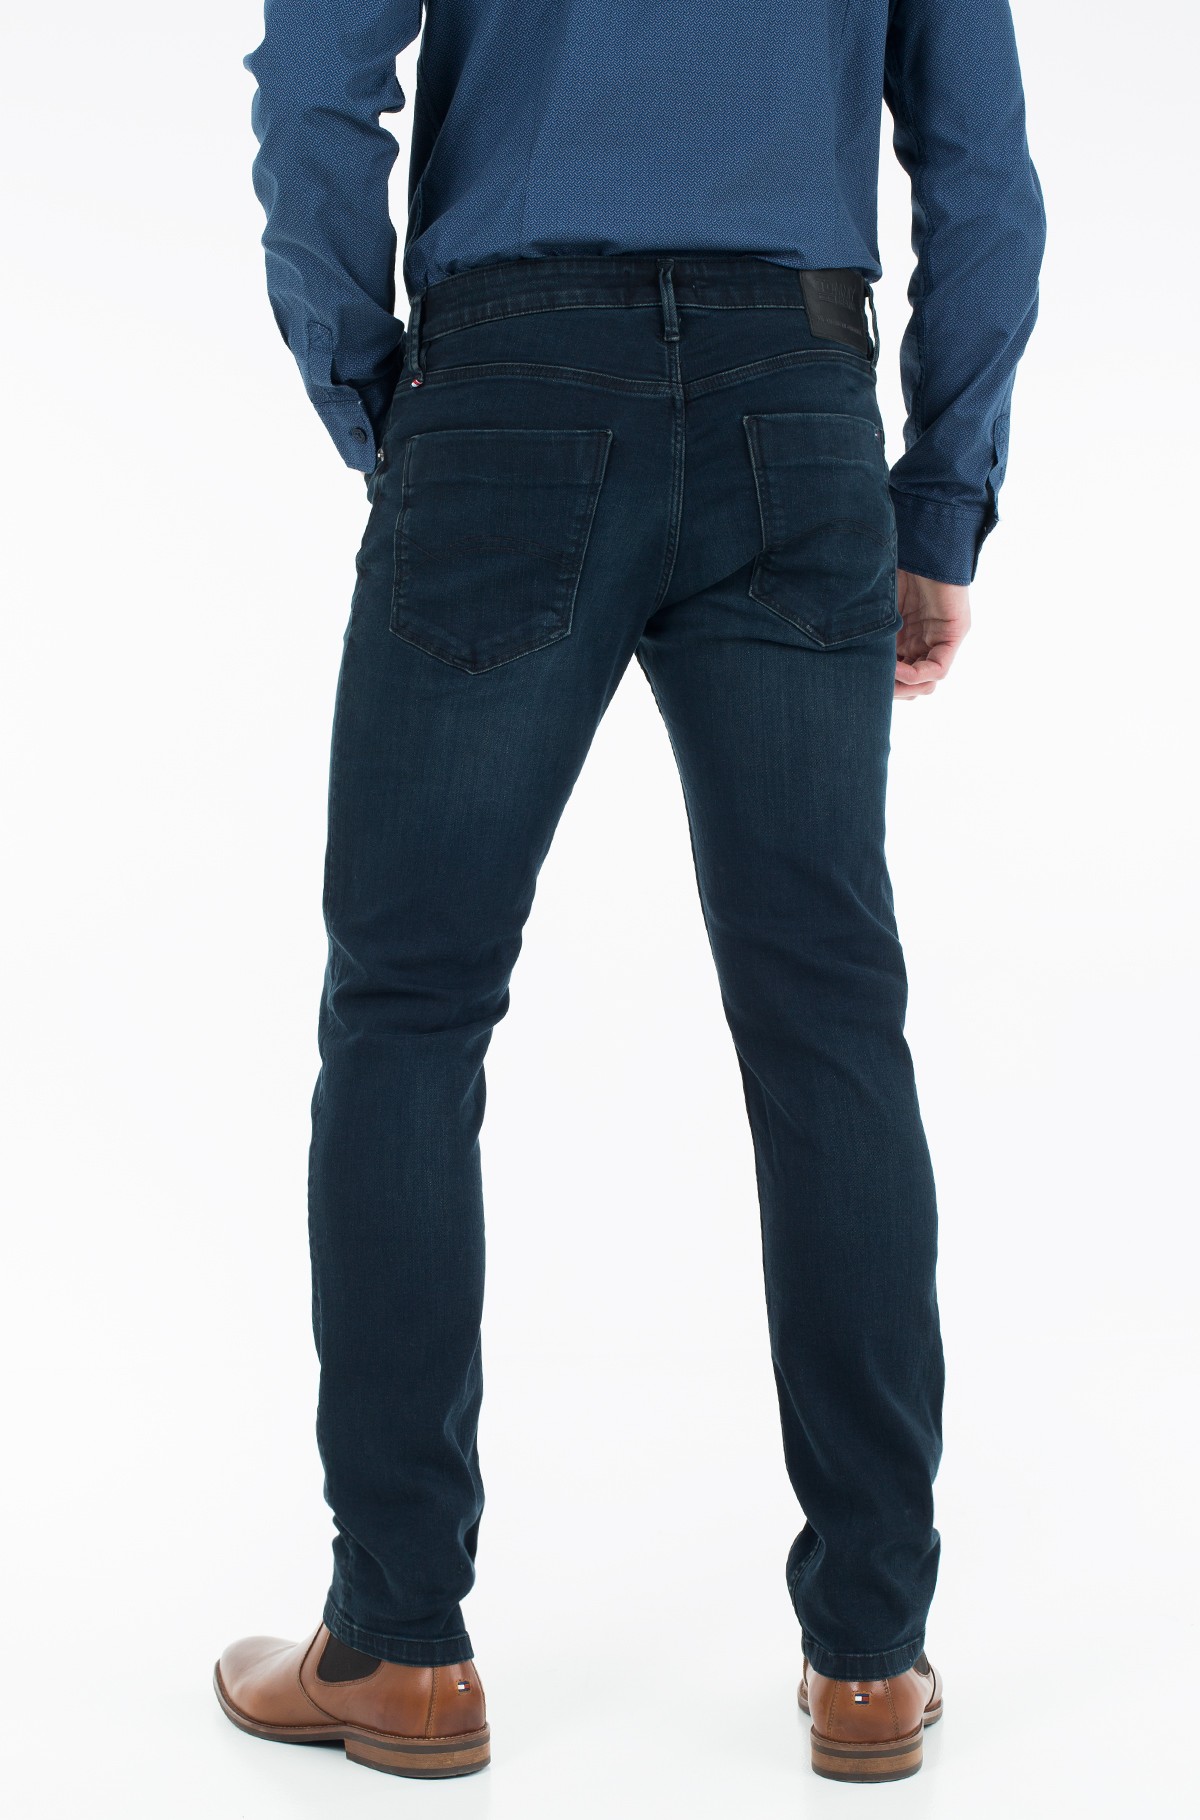 bermudas jeans masculinas de marca